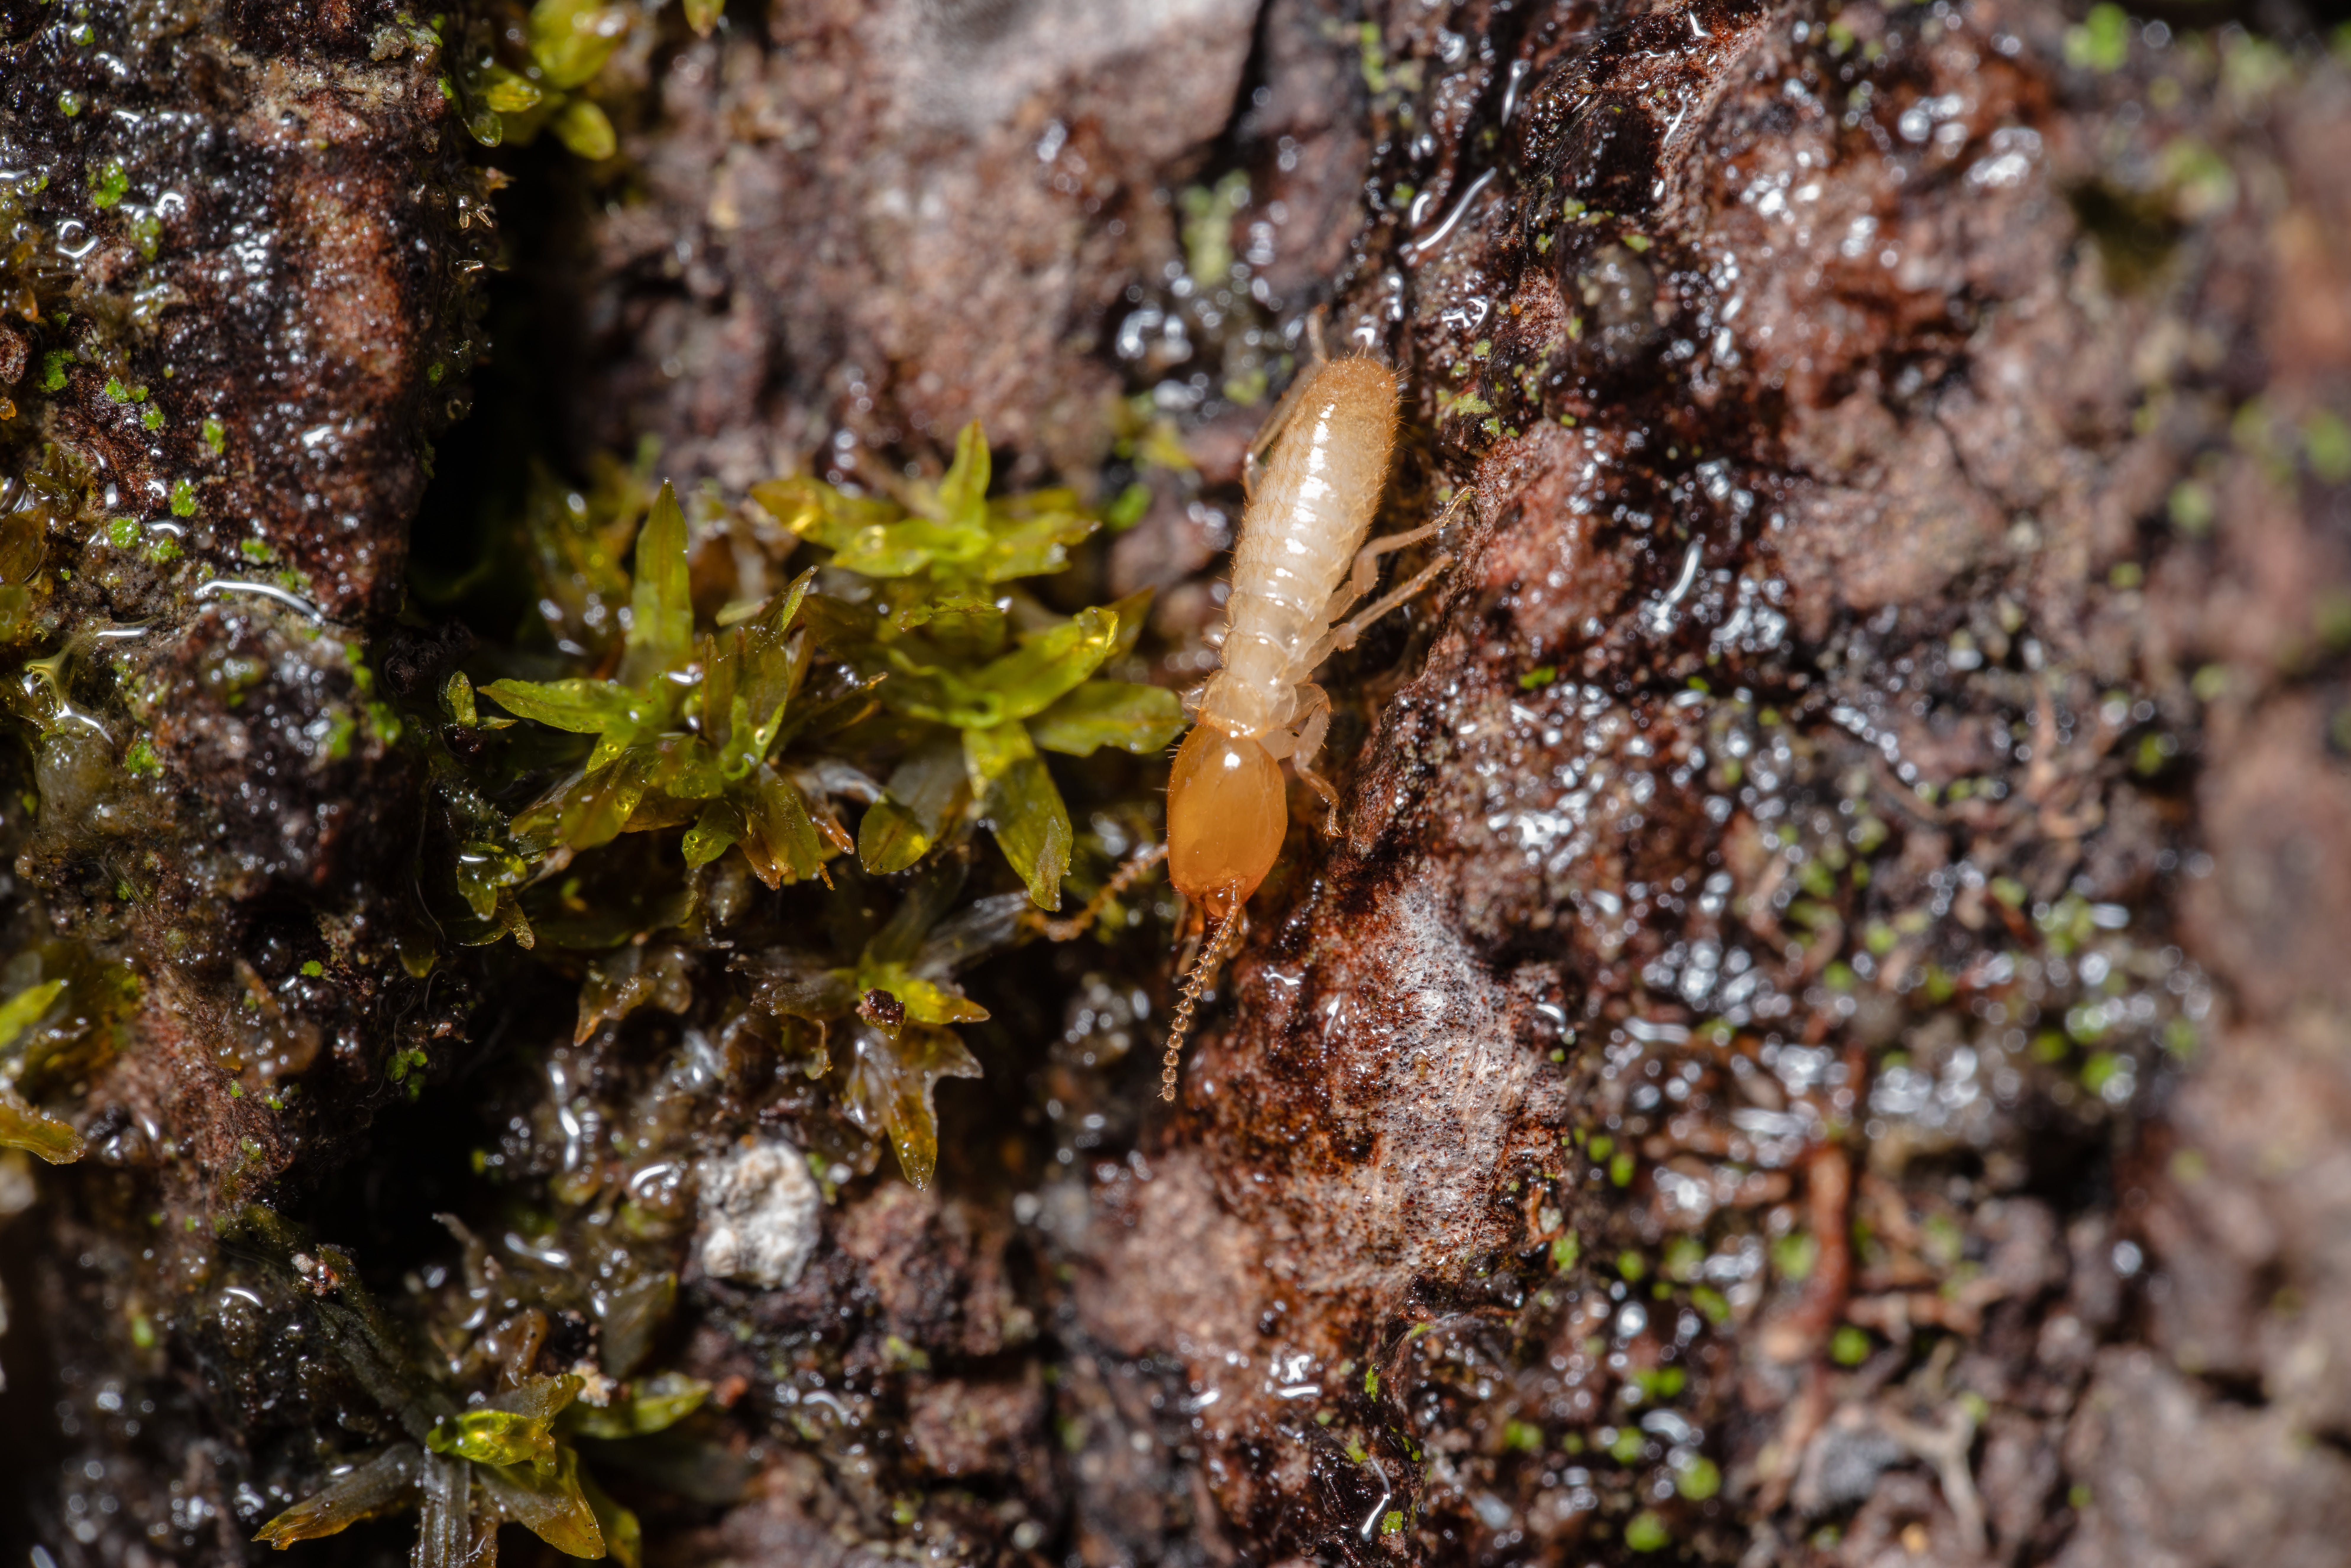 Close up shot of a termite. | Source: Pexels